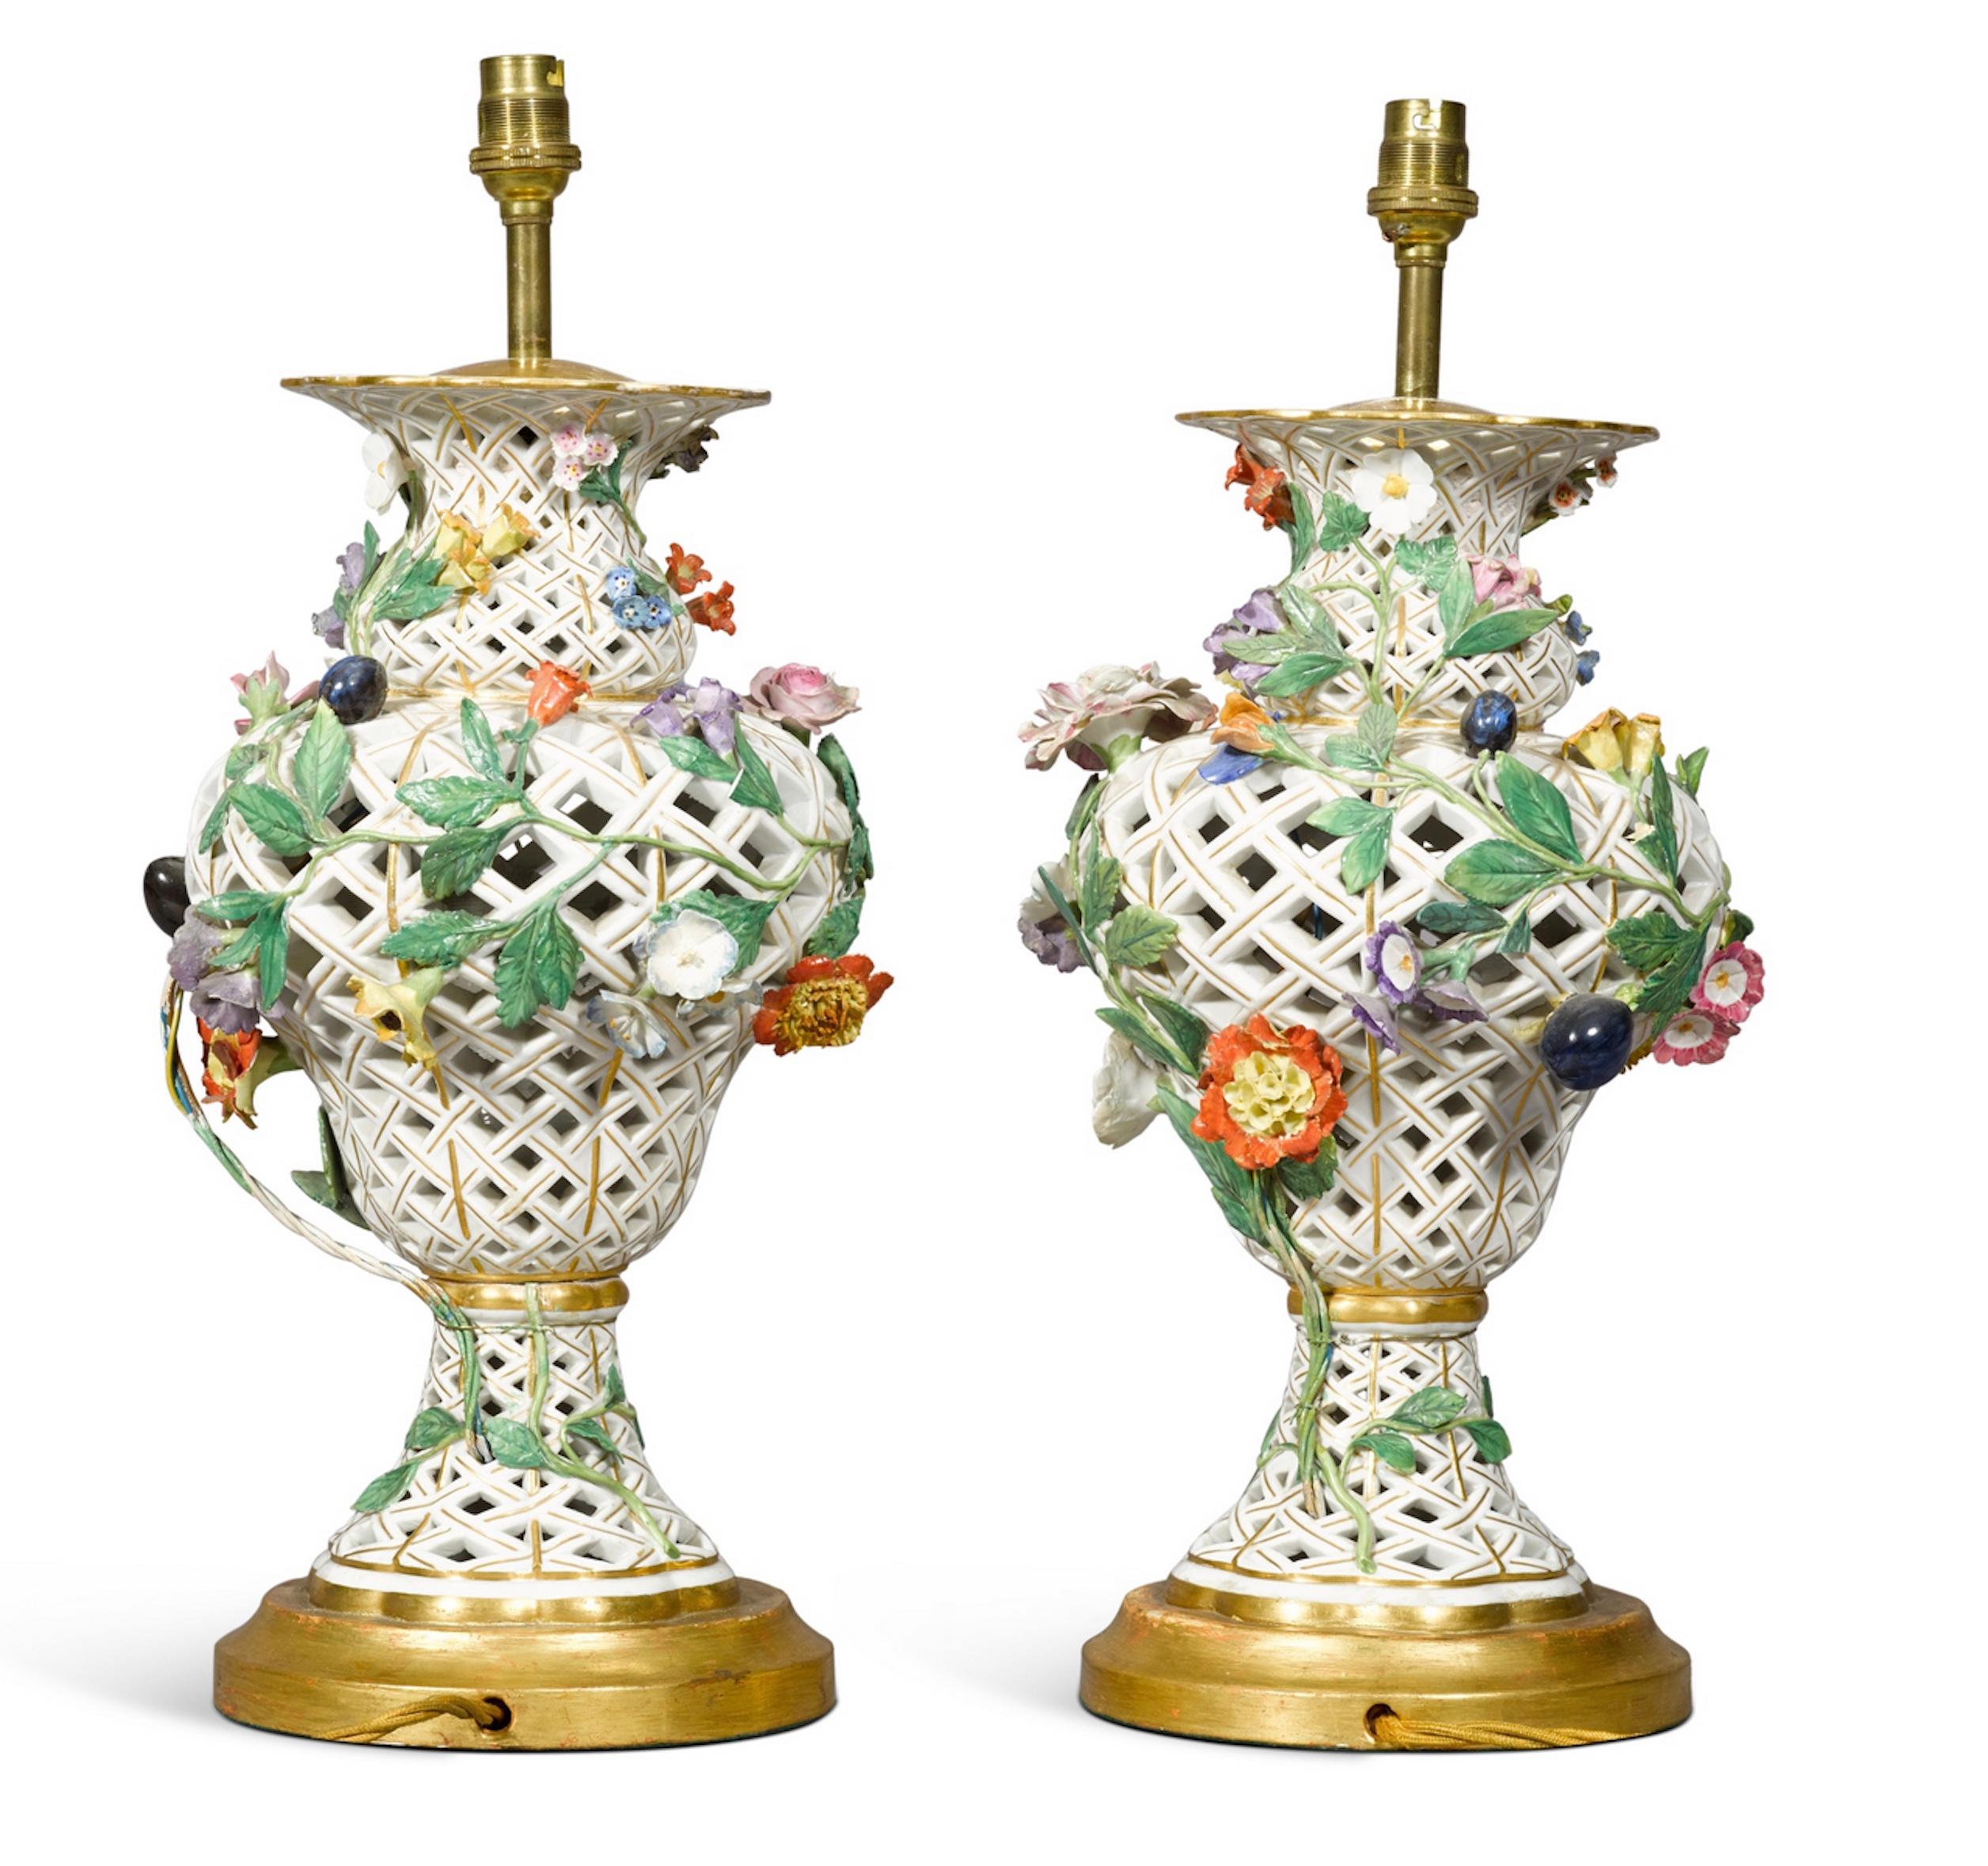 Ein seltenes Paar Tischlampen aus kontinentalem Porzellan, wahrscheinlich Samson im Meissener Stil, 19. Jahrhundert, in Balusterform, durchbrochen mit einem Spaliermuster und appliziert mit Früchten und Blumen, jetzt als Lampe mit einem